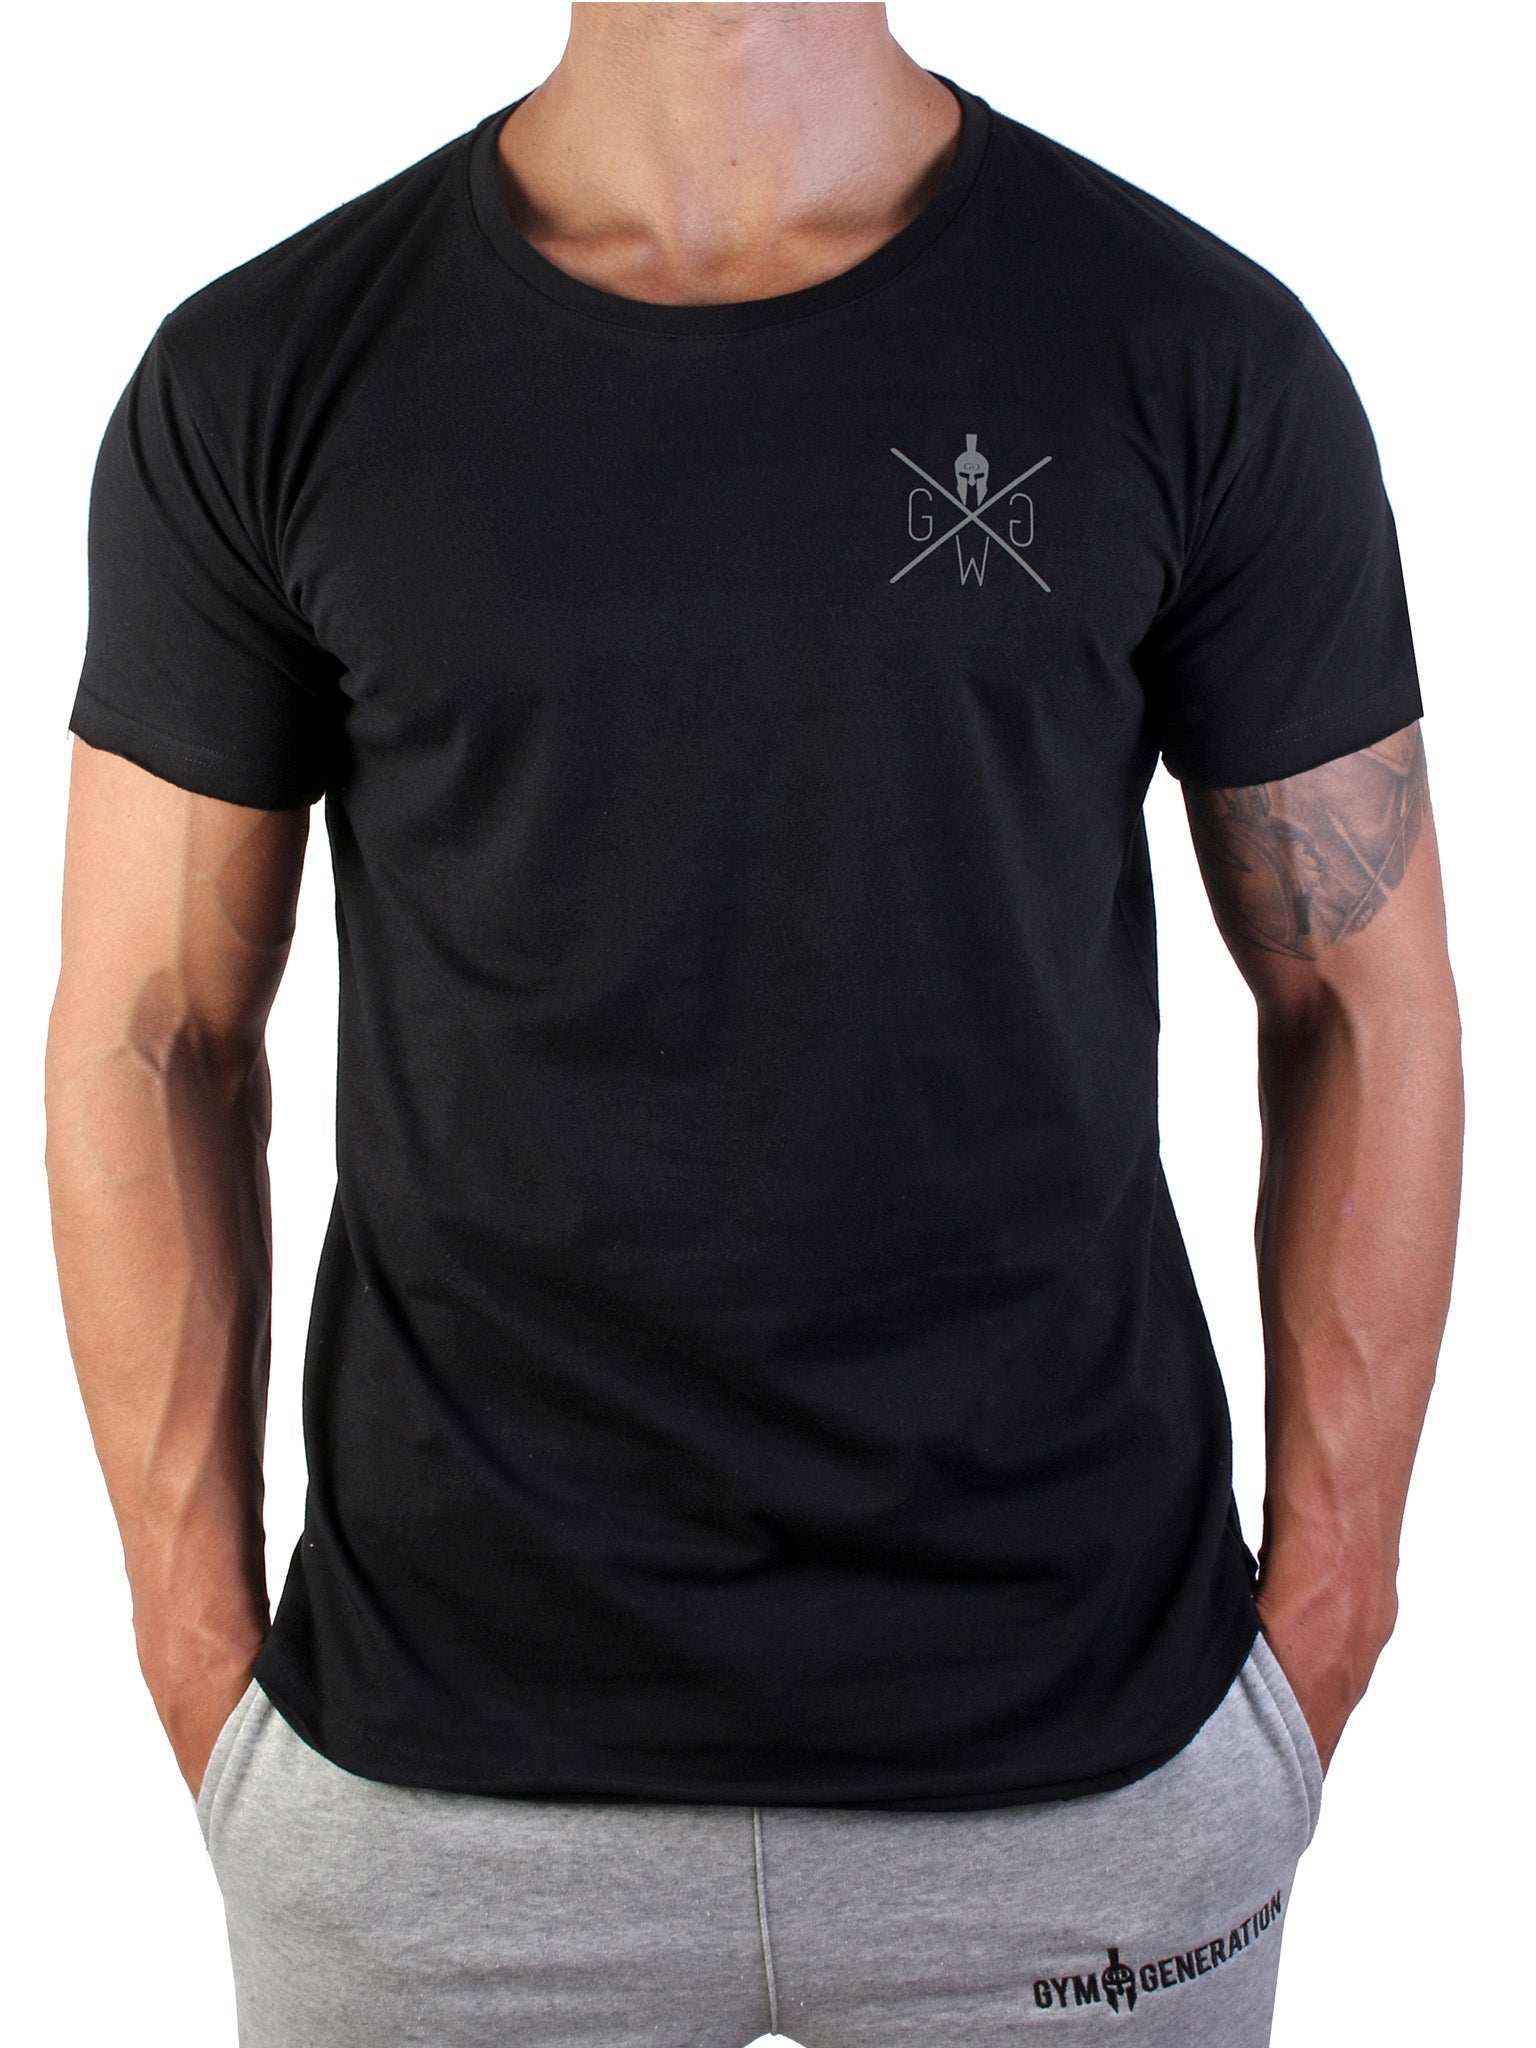 Urban Warrior T-Shirt - Schwarz - Gym Generation®--www.gymgeneration.ch